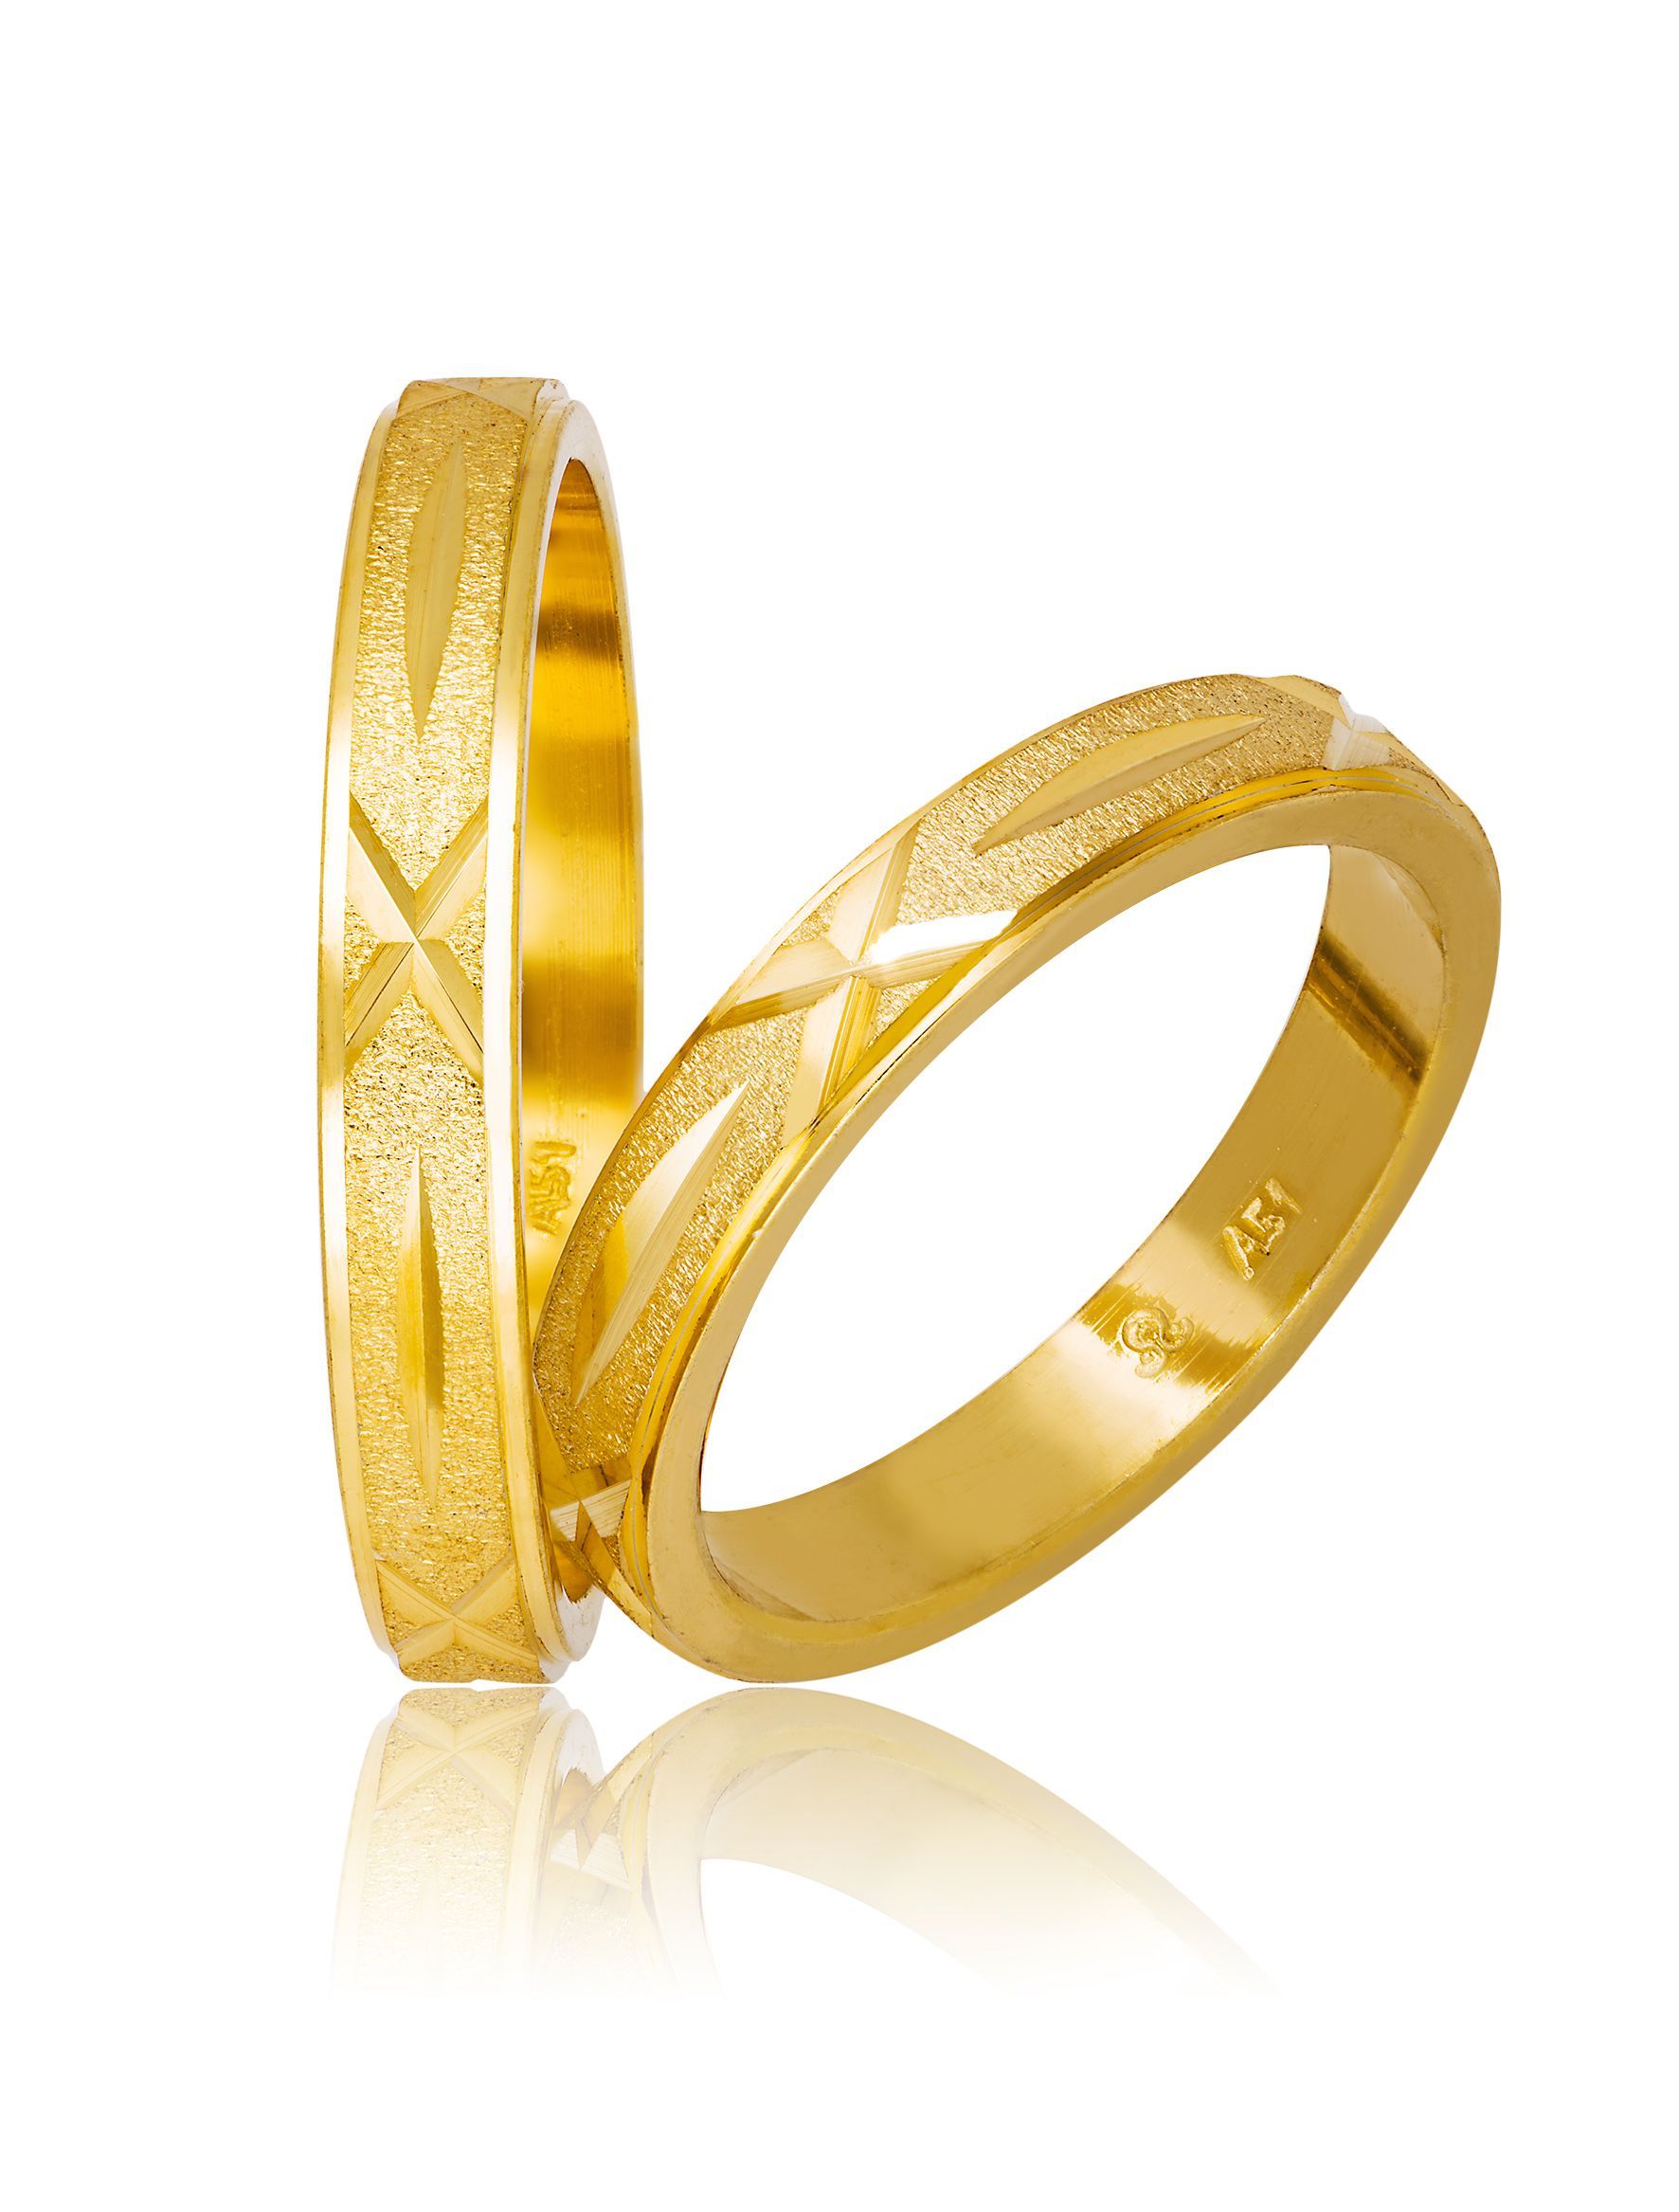 Golden wedding rings 3.5mm (code 716)